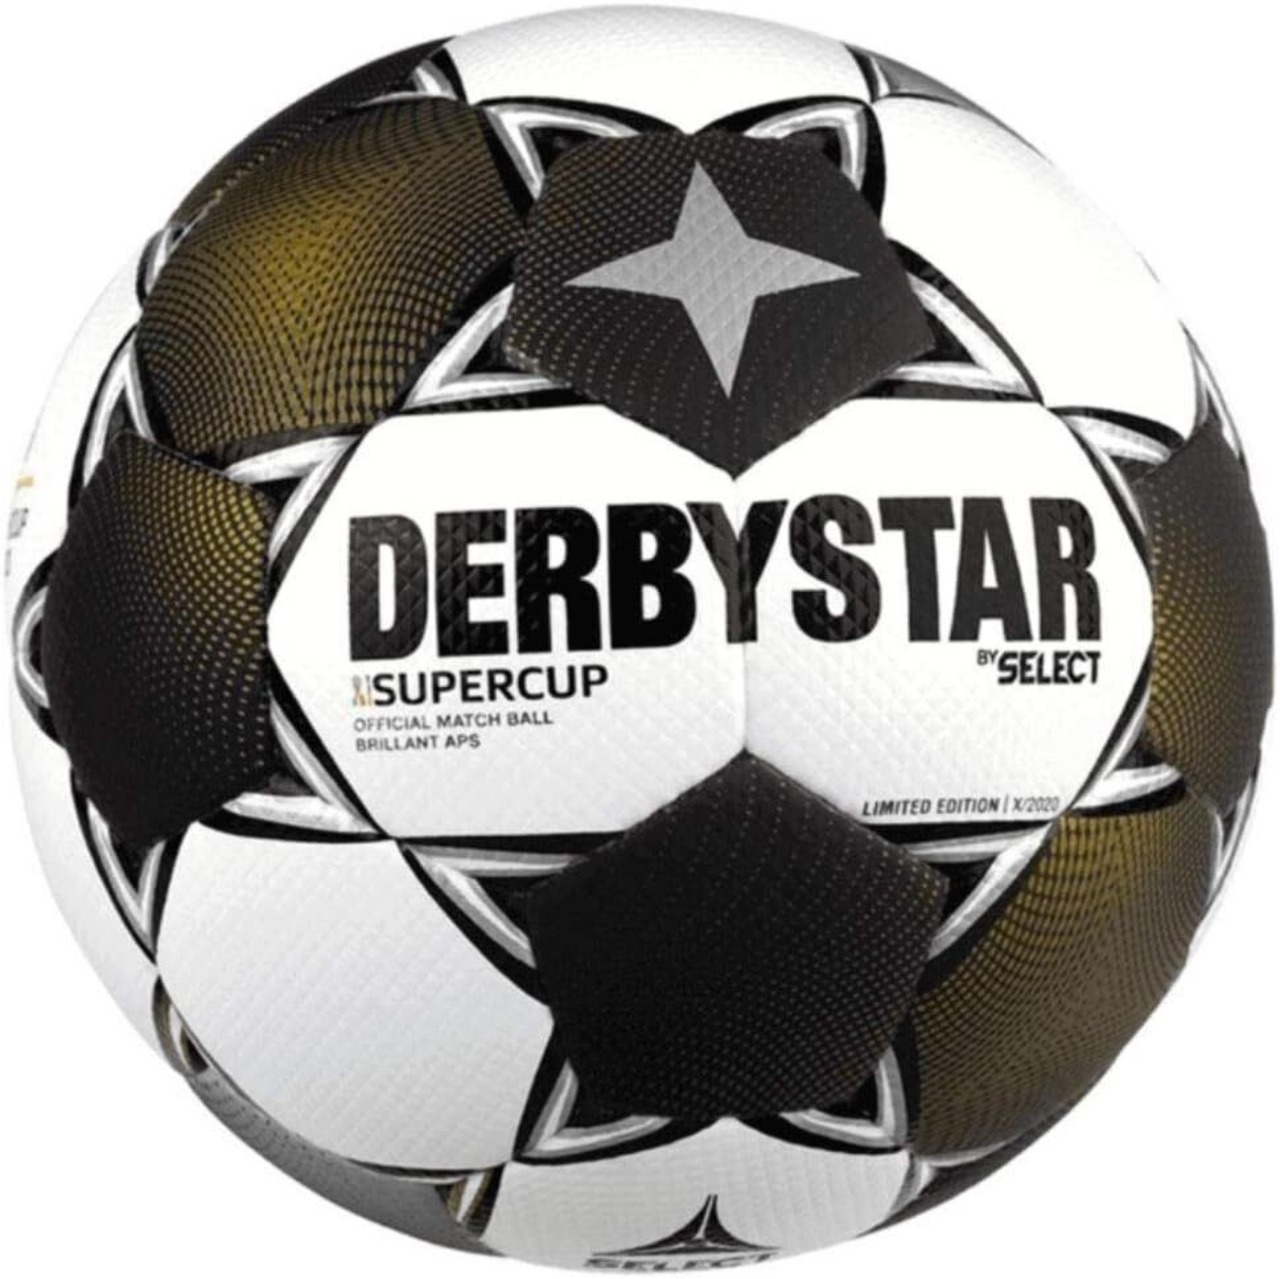 【公式】DERBYSTAR(ダービースター) サッカーボール 5号球 FIFA国際公認球 ドイツスーパーカップ BUNDESLIGA BRILLANT(ブリラント) APS SUPERCUP2020 20-21モデル